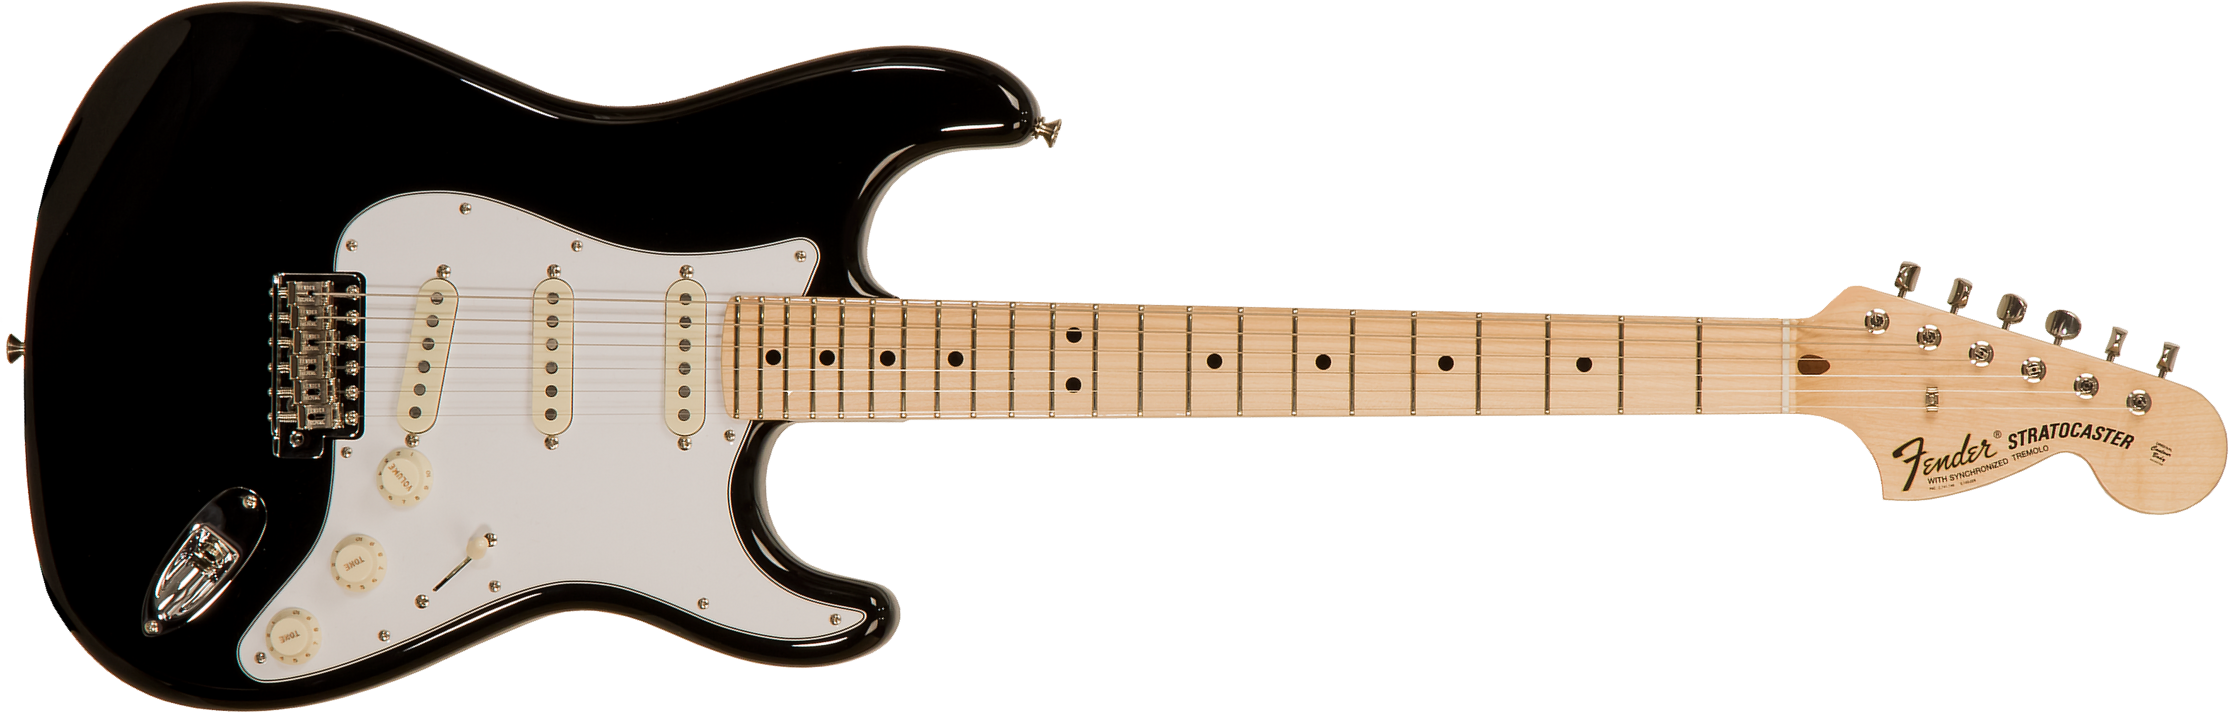 Fender Custom Shop Strat 1969 3s Trem Mn #r123423 - Nos Black - E-Gitarre in Str-Form - Main picture